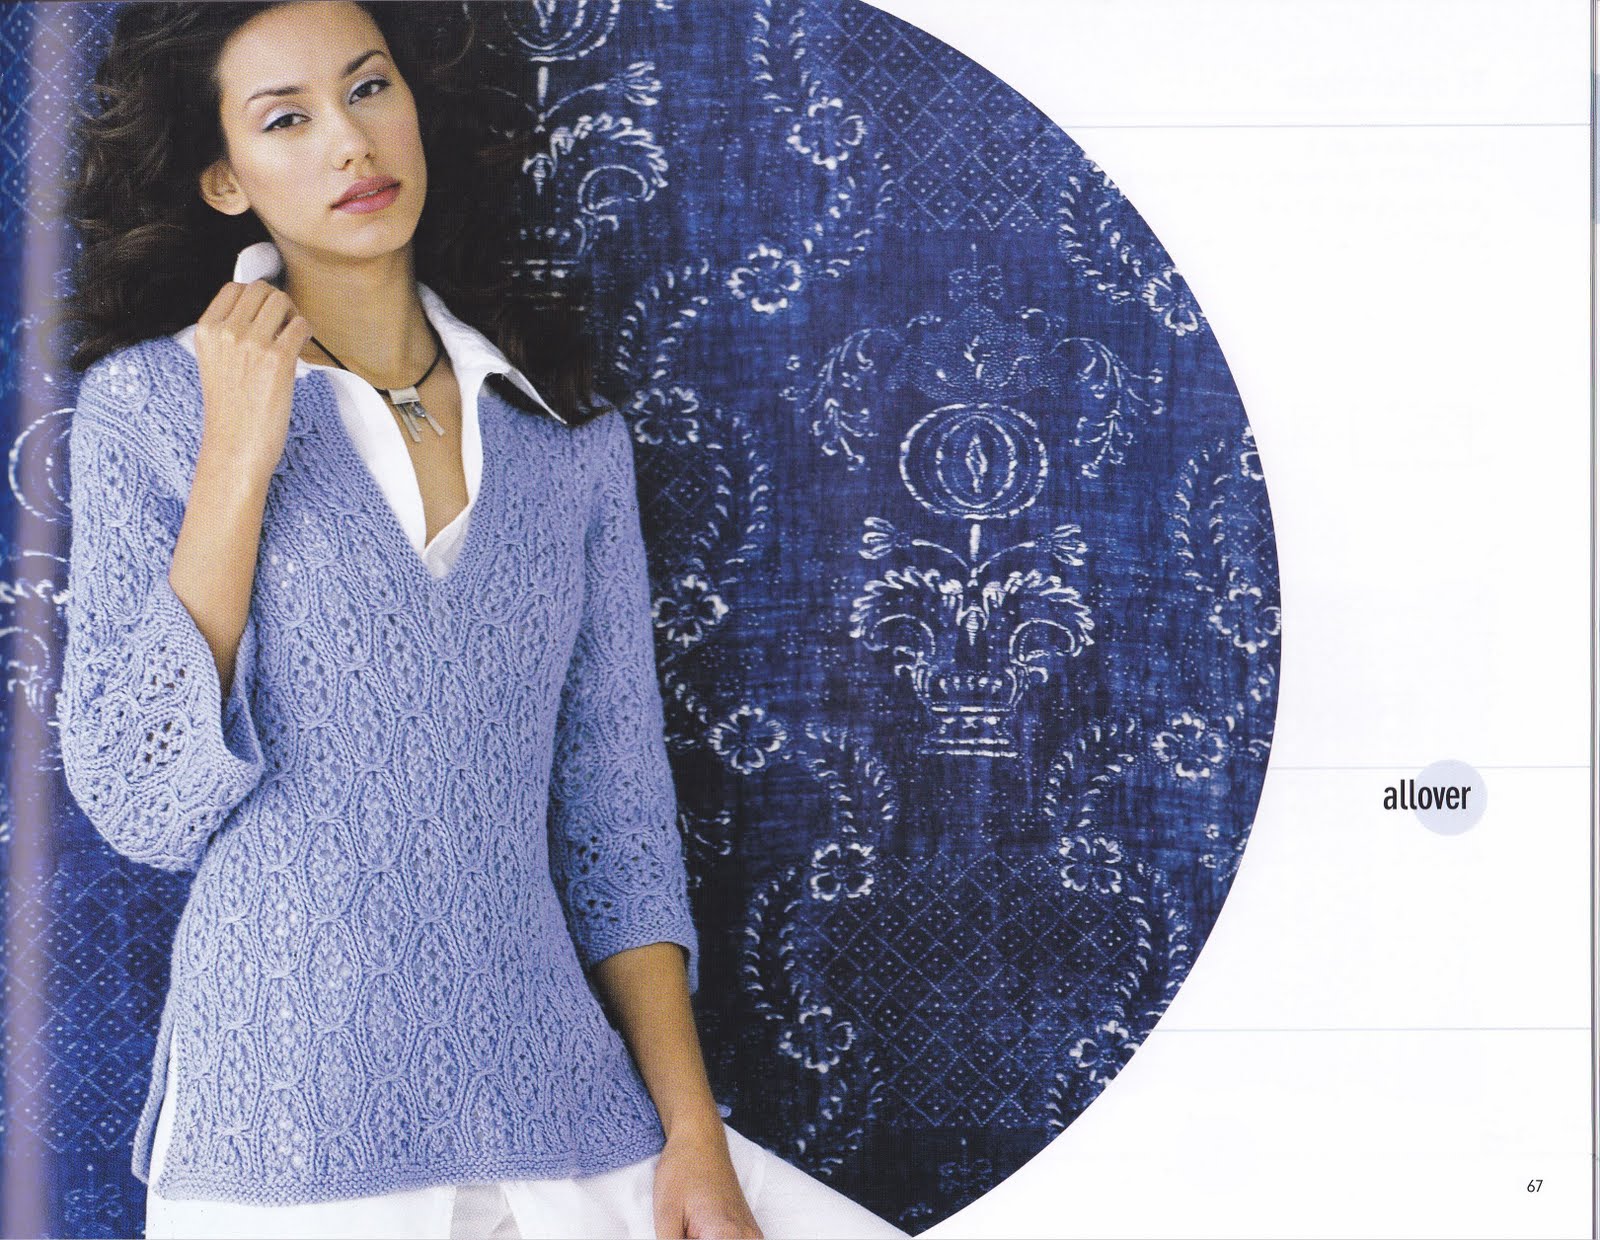 modele tricot tunique